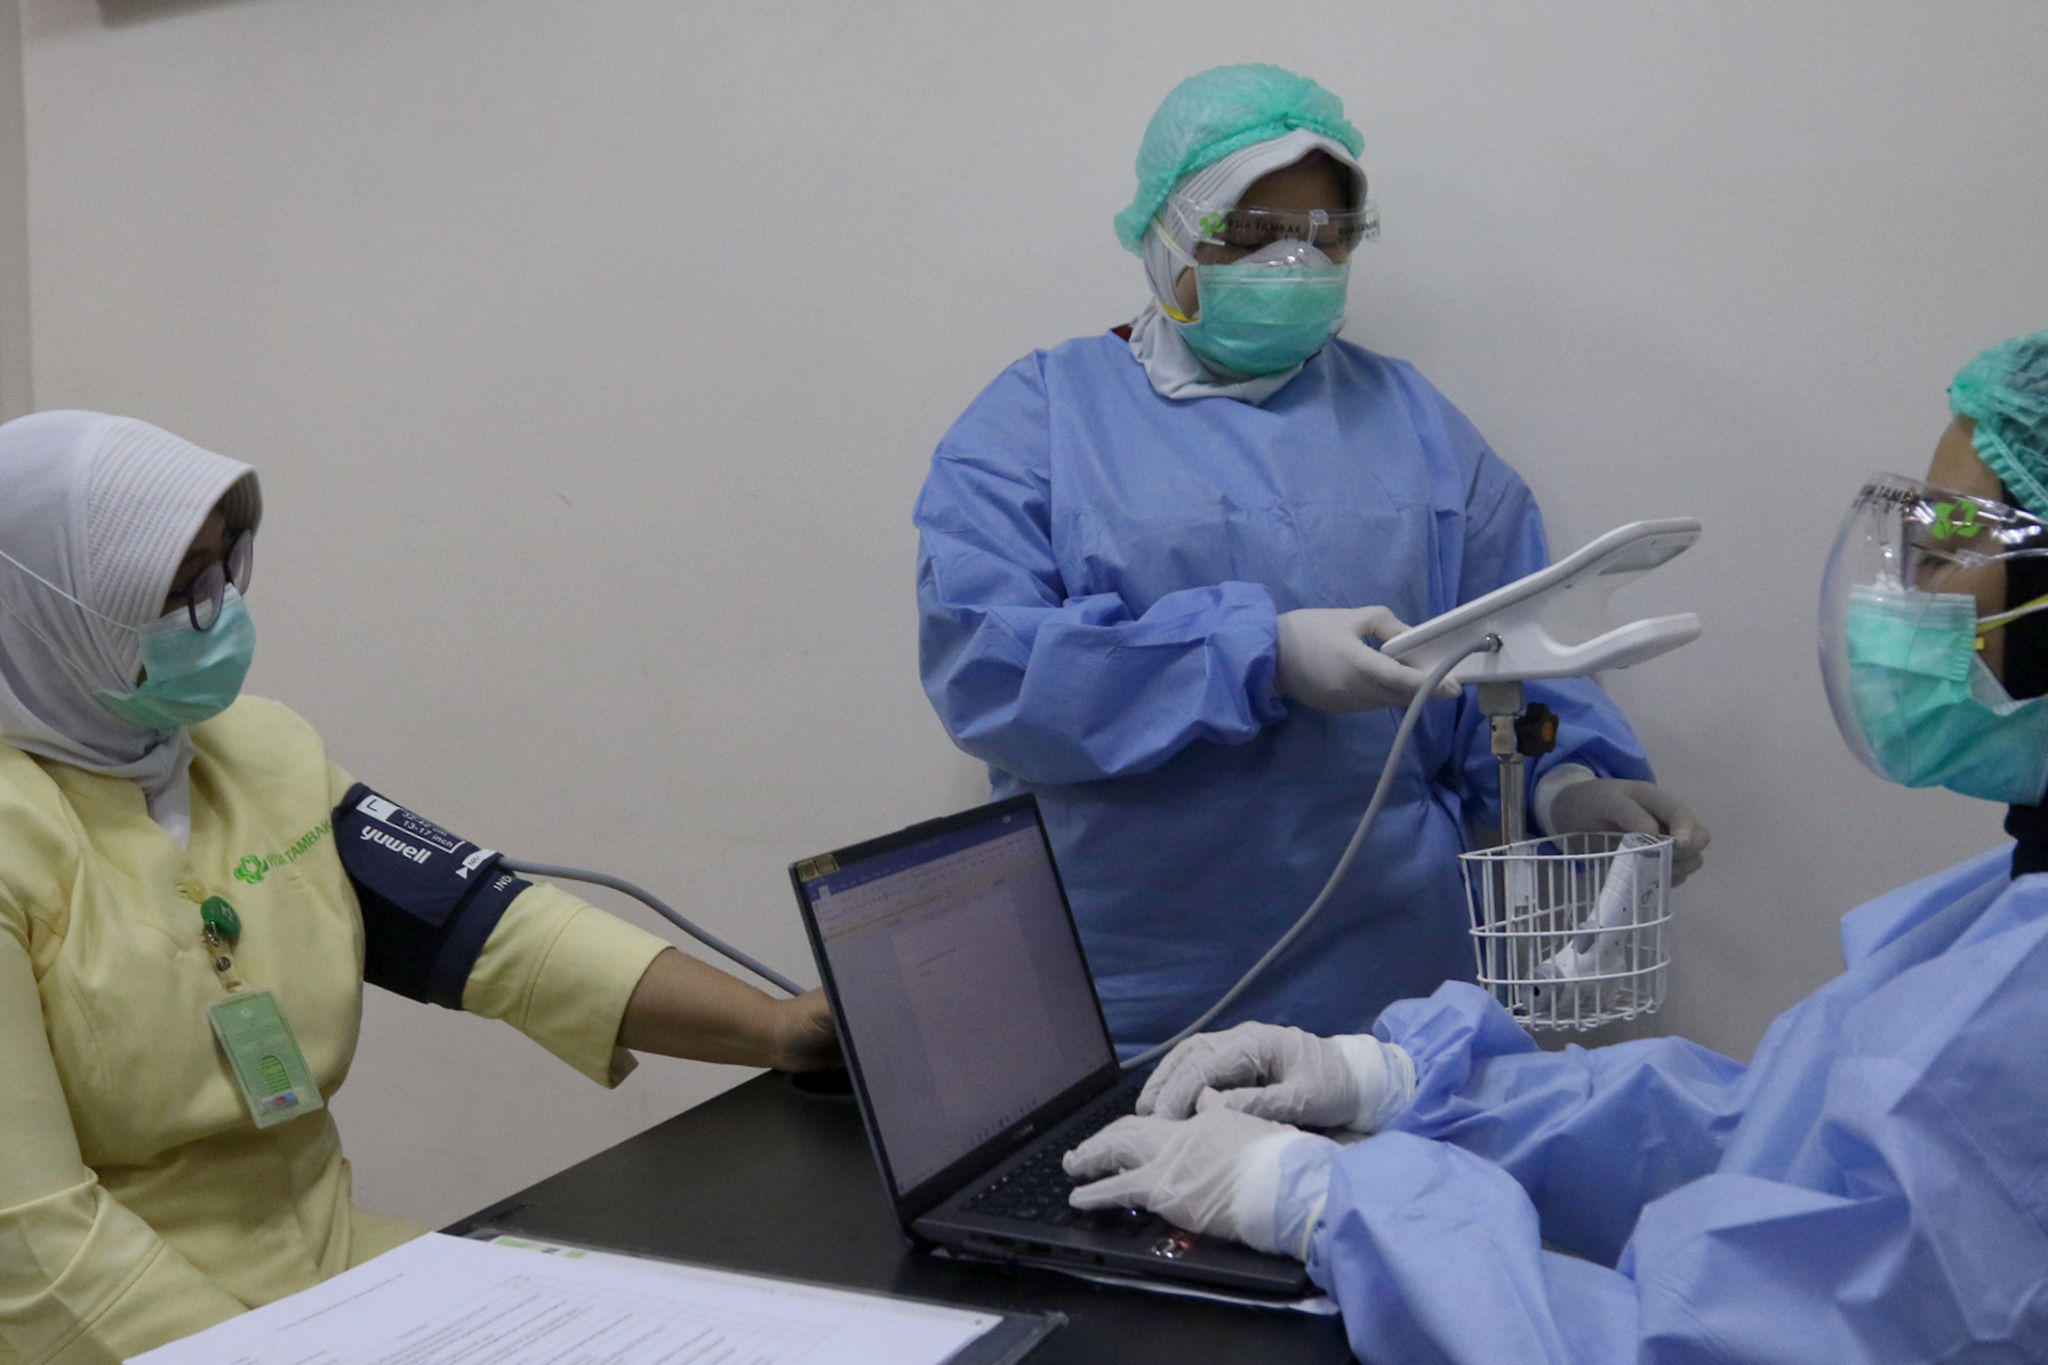 <p>Tenaga kesehatan atau nakes calon penerima vaksin mengikuti tahapan simulasi pemberian vaksin COVID-19 di RSIA Tambak, Jakarta, Rabu, 12 Januari 2021. Foto: Ismail Pohan/TrenAsia</p>
